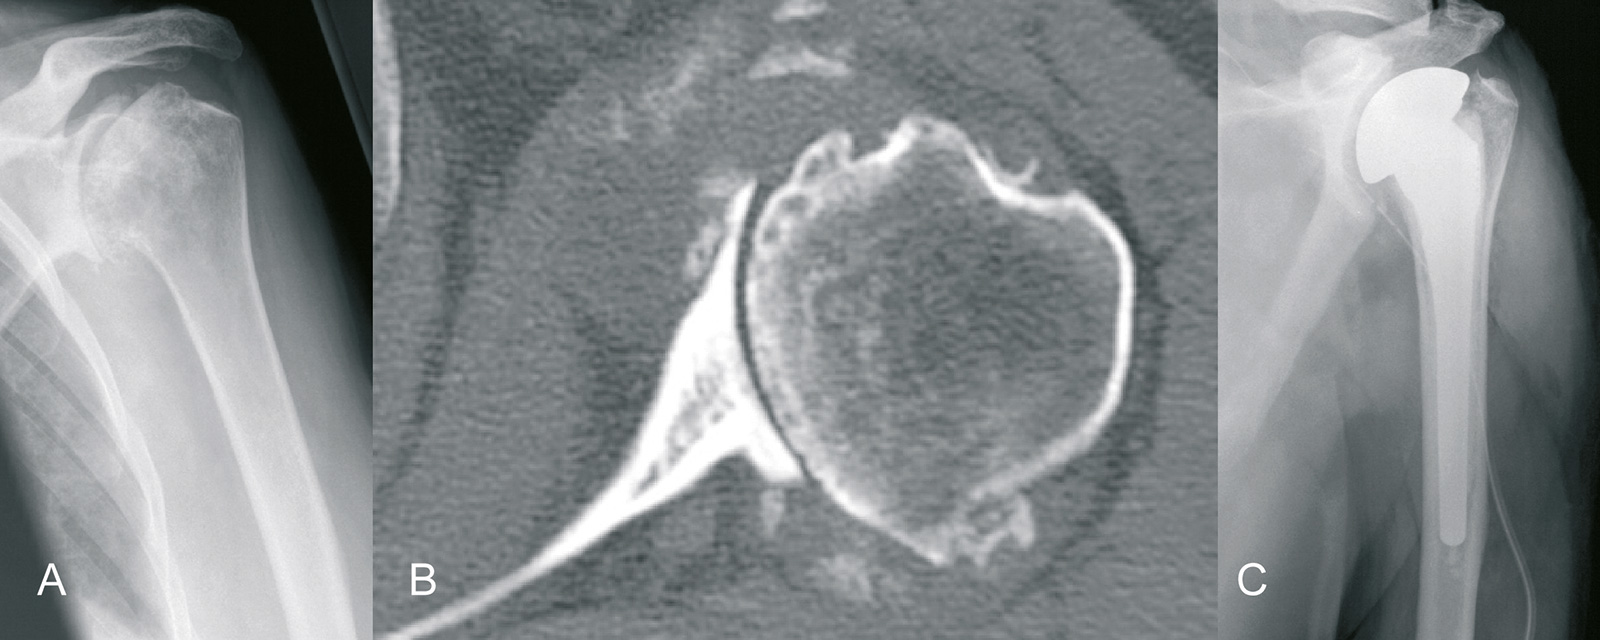 Abb. 1-56: Subluxation des Humeruskopfes und Arrosion des Glenoids (A,B) erschweren die Implantation einer Pfannenkomponente: Indikation für eine Hemiprothese (C) (Eigentum des Instituts für Klinische Radiologie der Universität Münster)